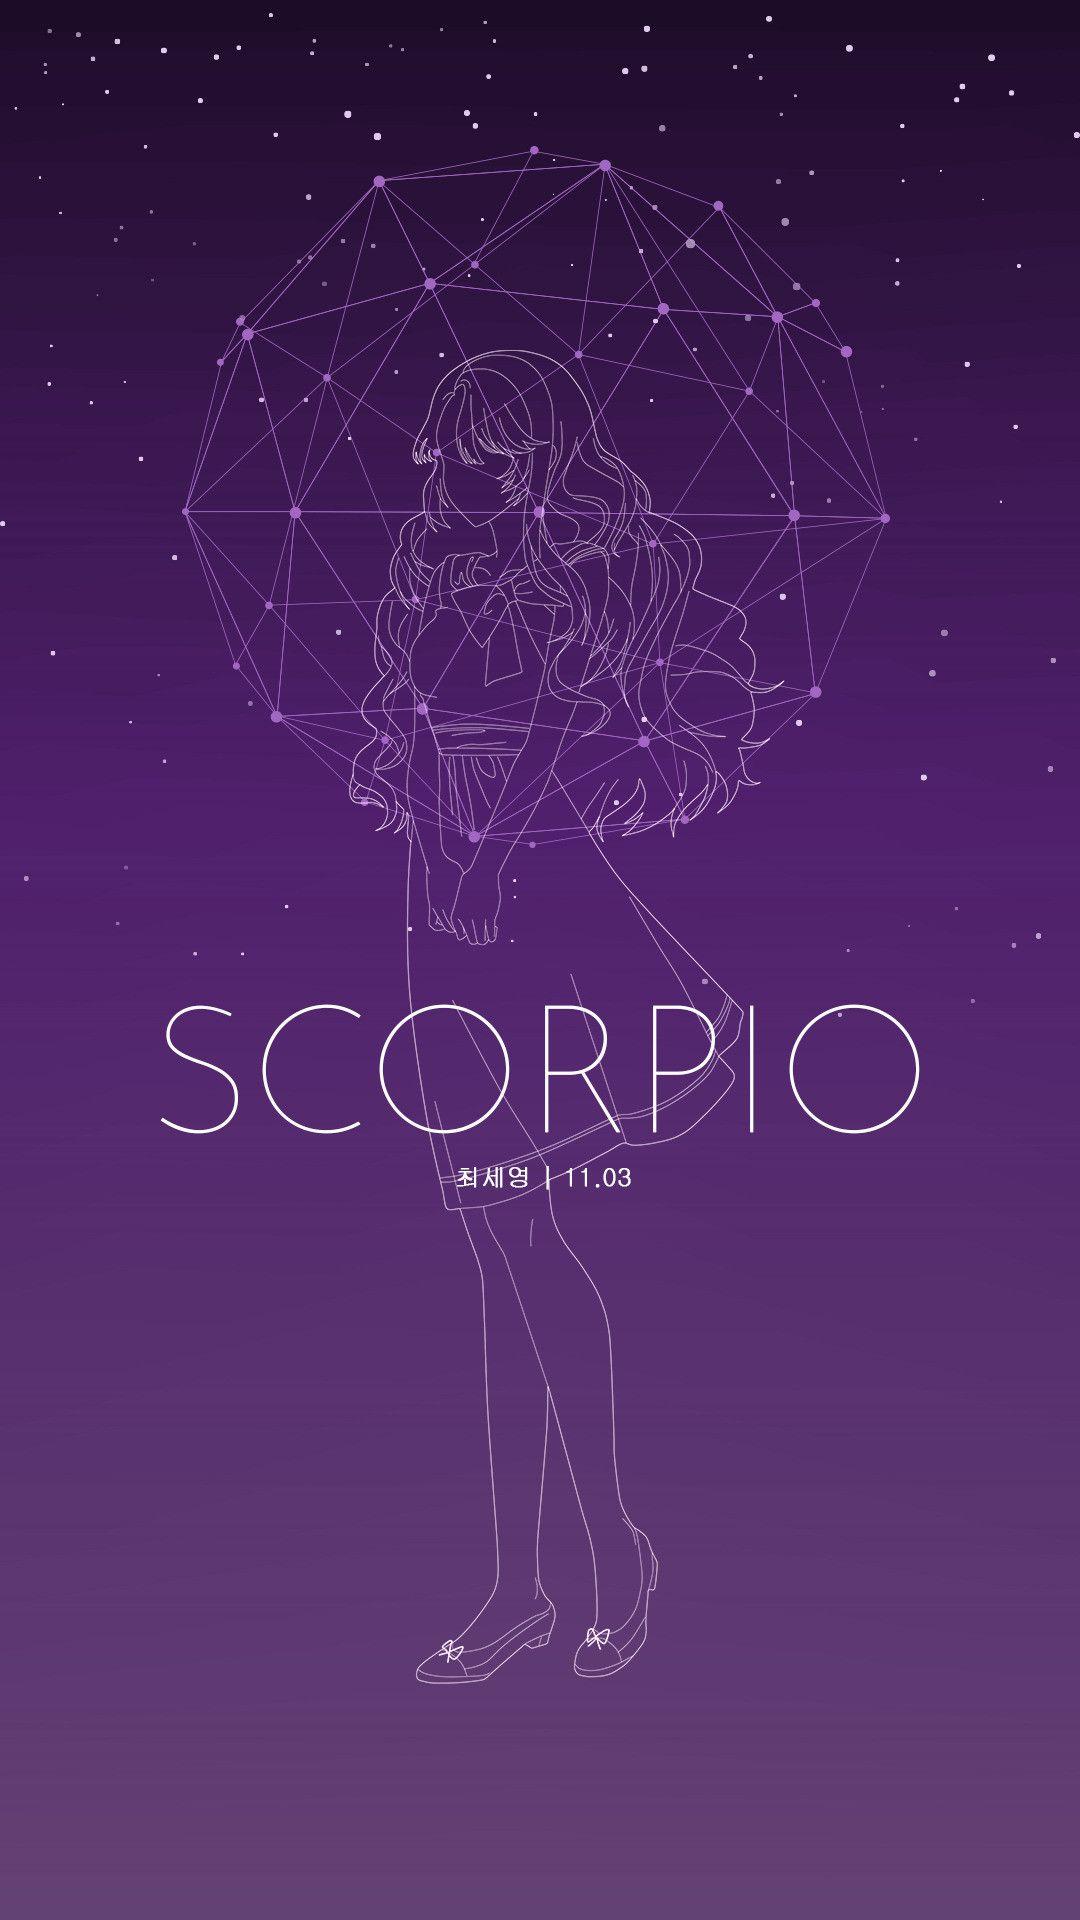 Hd Wallpaper For Scorpio Zodiac